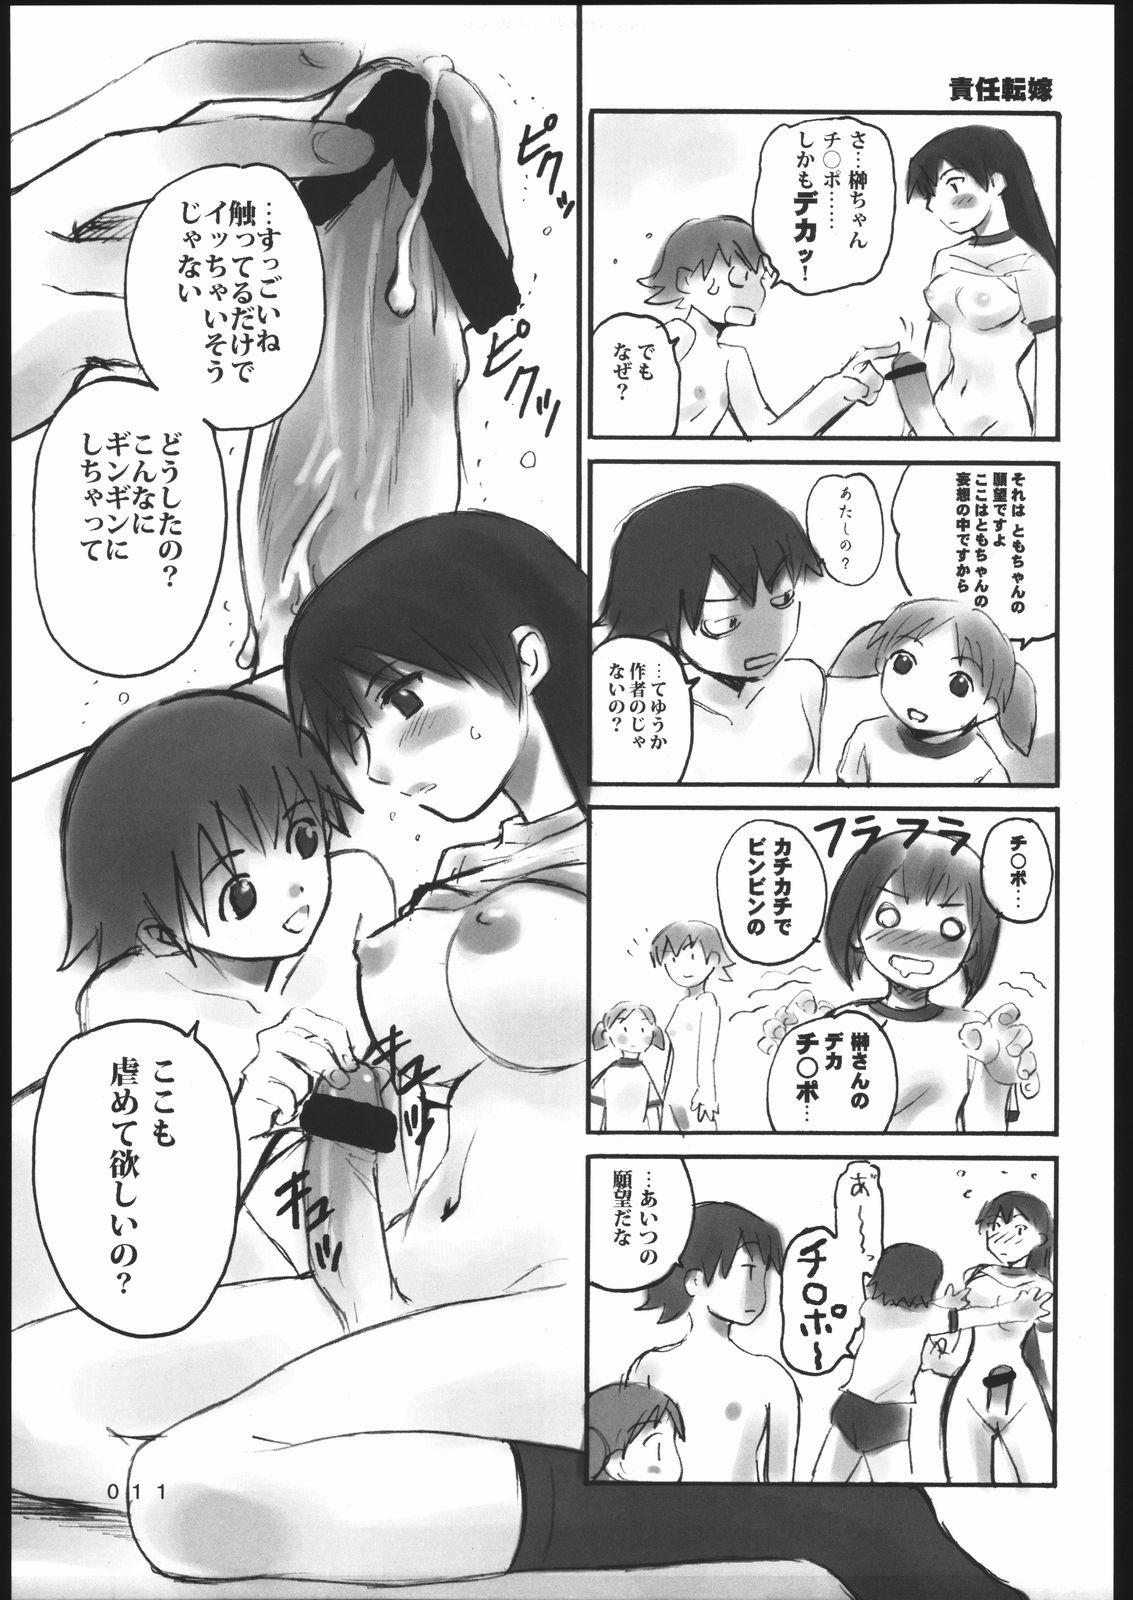 Peitos 000.5 - Azumanga daioh Amazing - Page 10